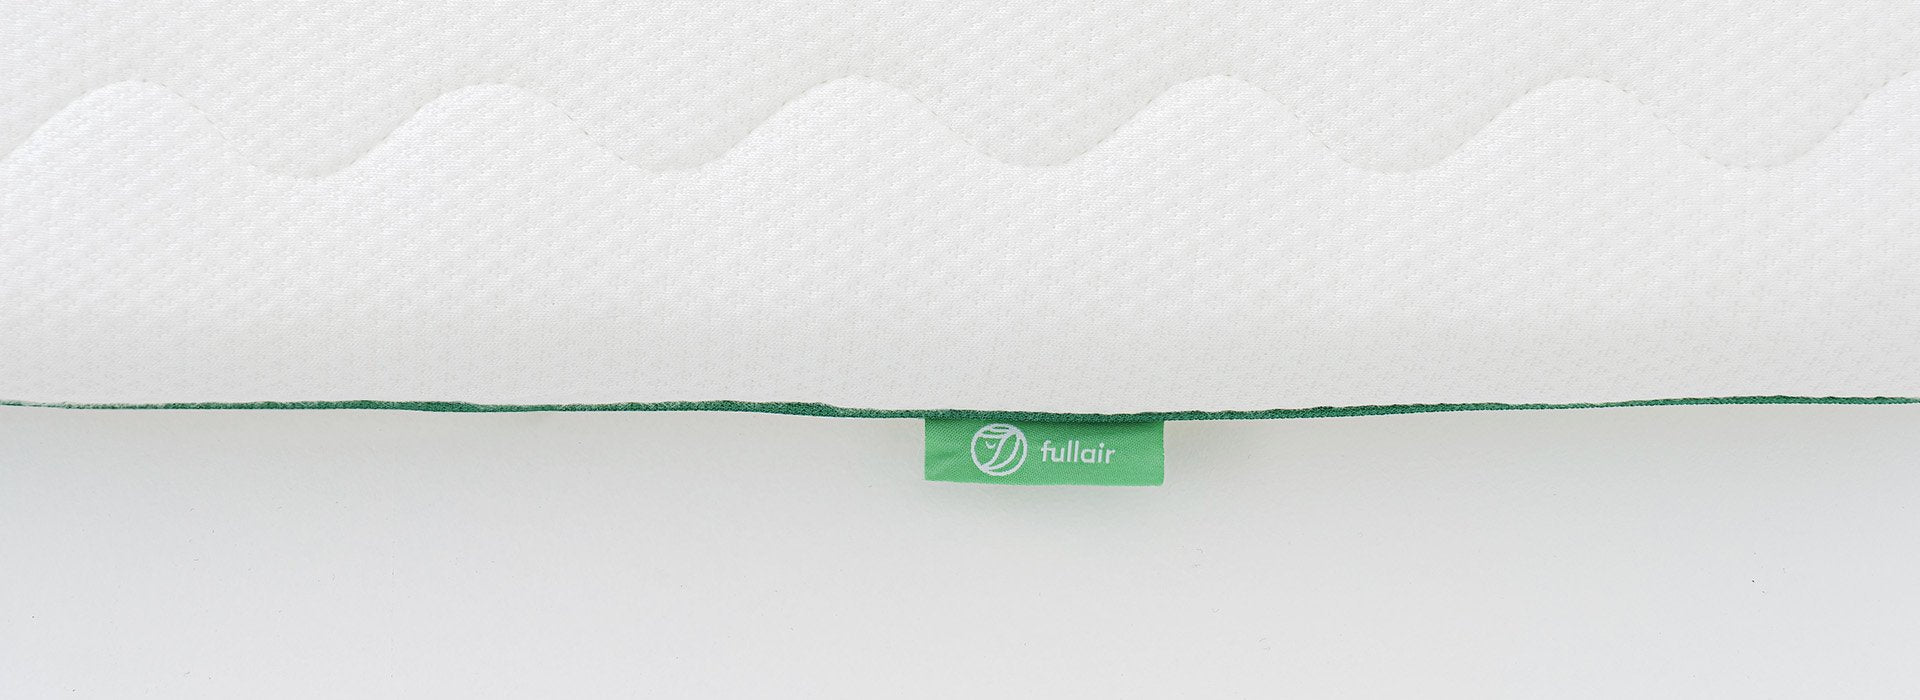 Close-up of Fullair Top Mattress tag.